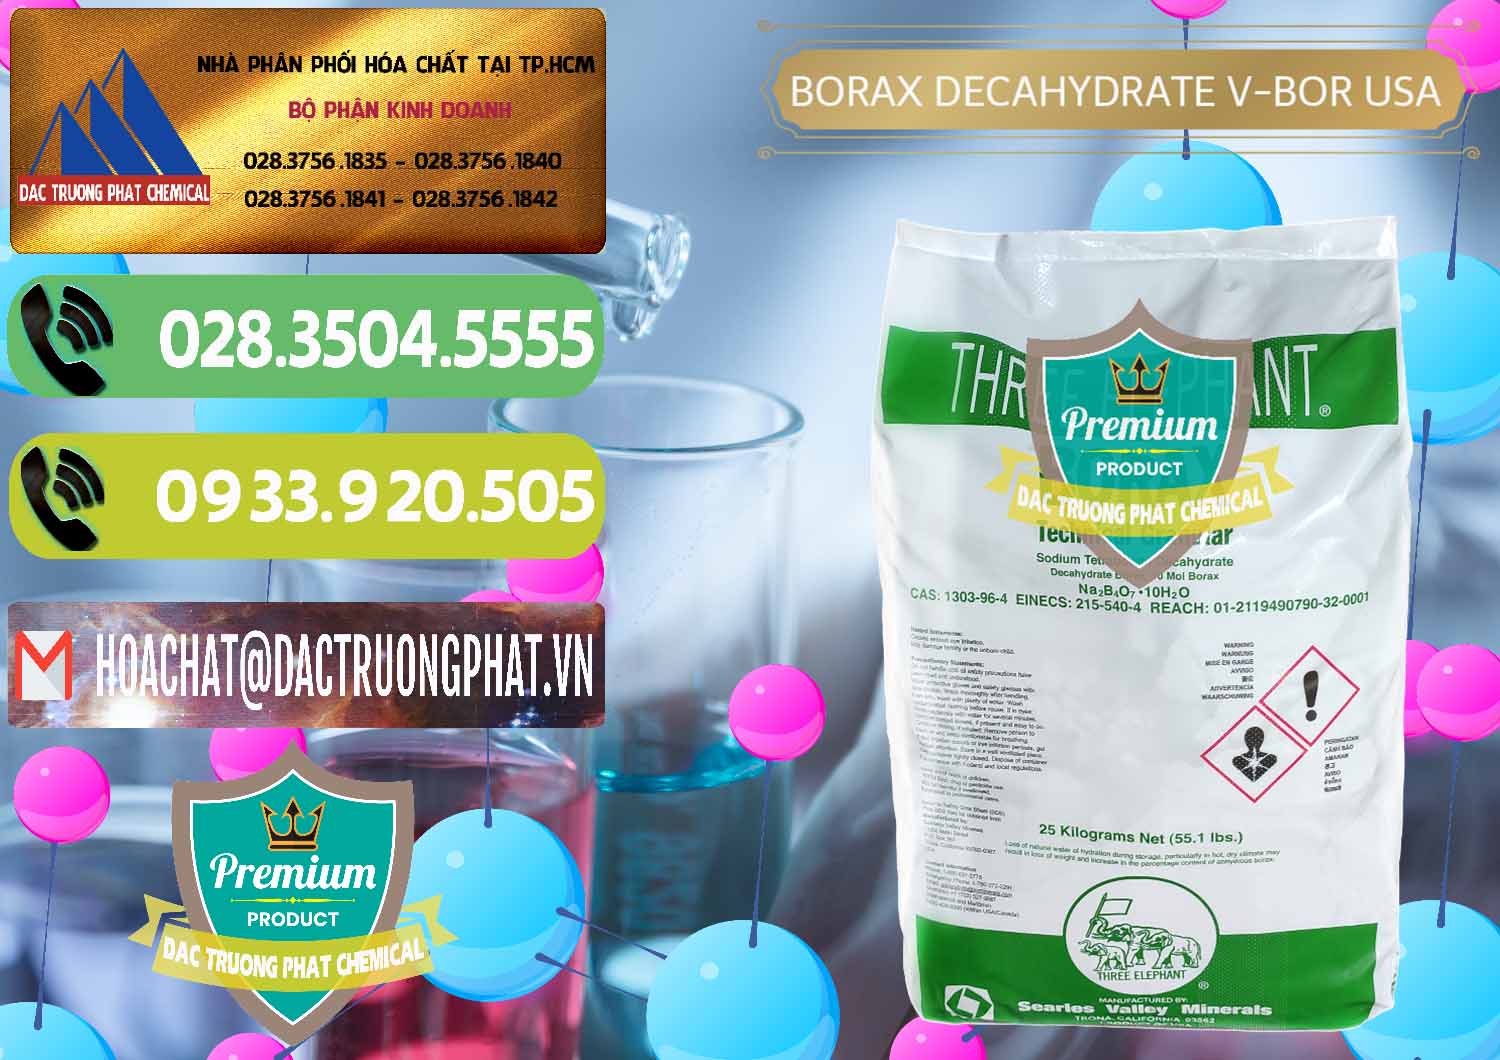 Đơn vị chuyên kinh doanh & bán Borax Decahydrate NA2B4O7.10H2O Mỹ V-Bor Usa - 0032 - Công ty chuyên bán và phân phối hóa chất tại TP.HCM - hoachatmientay.vn